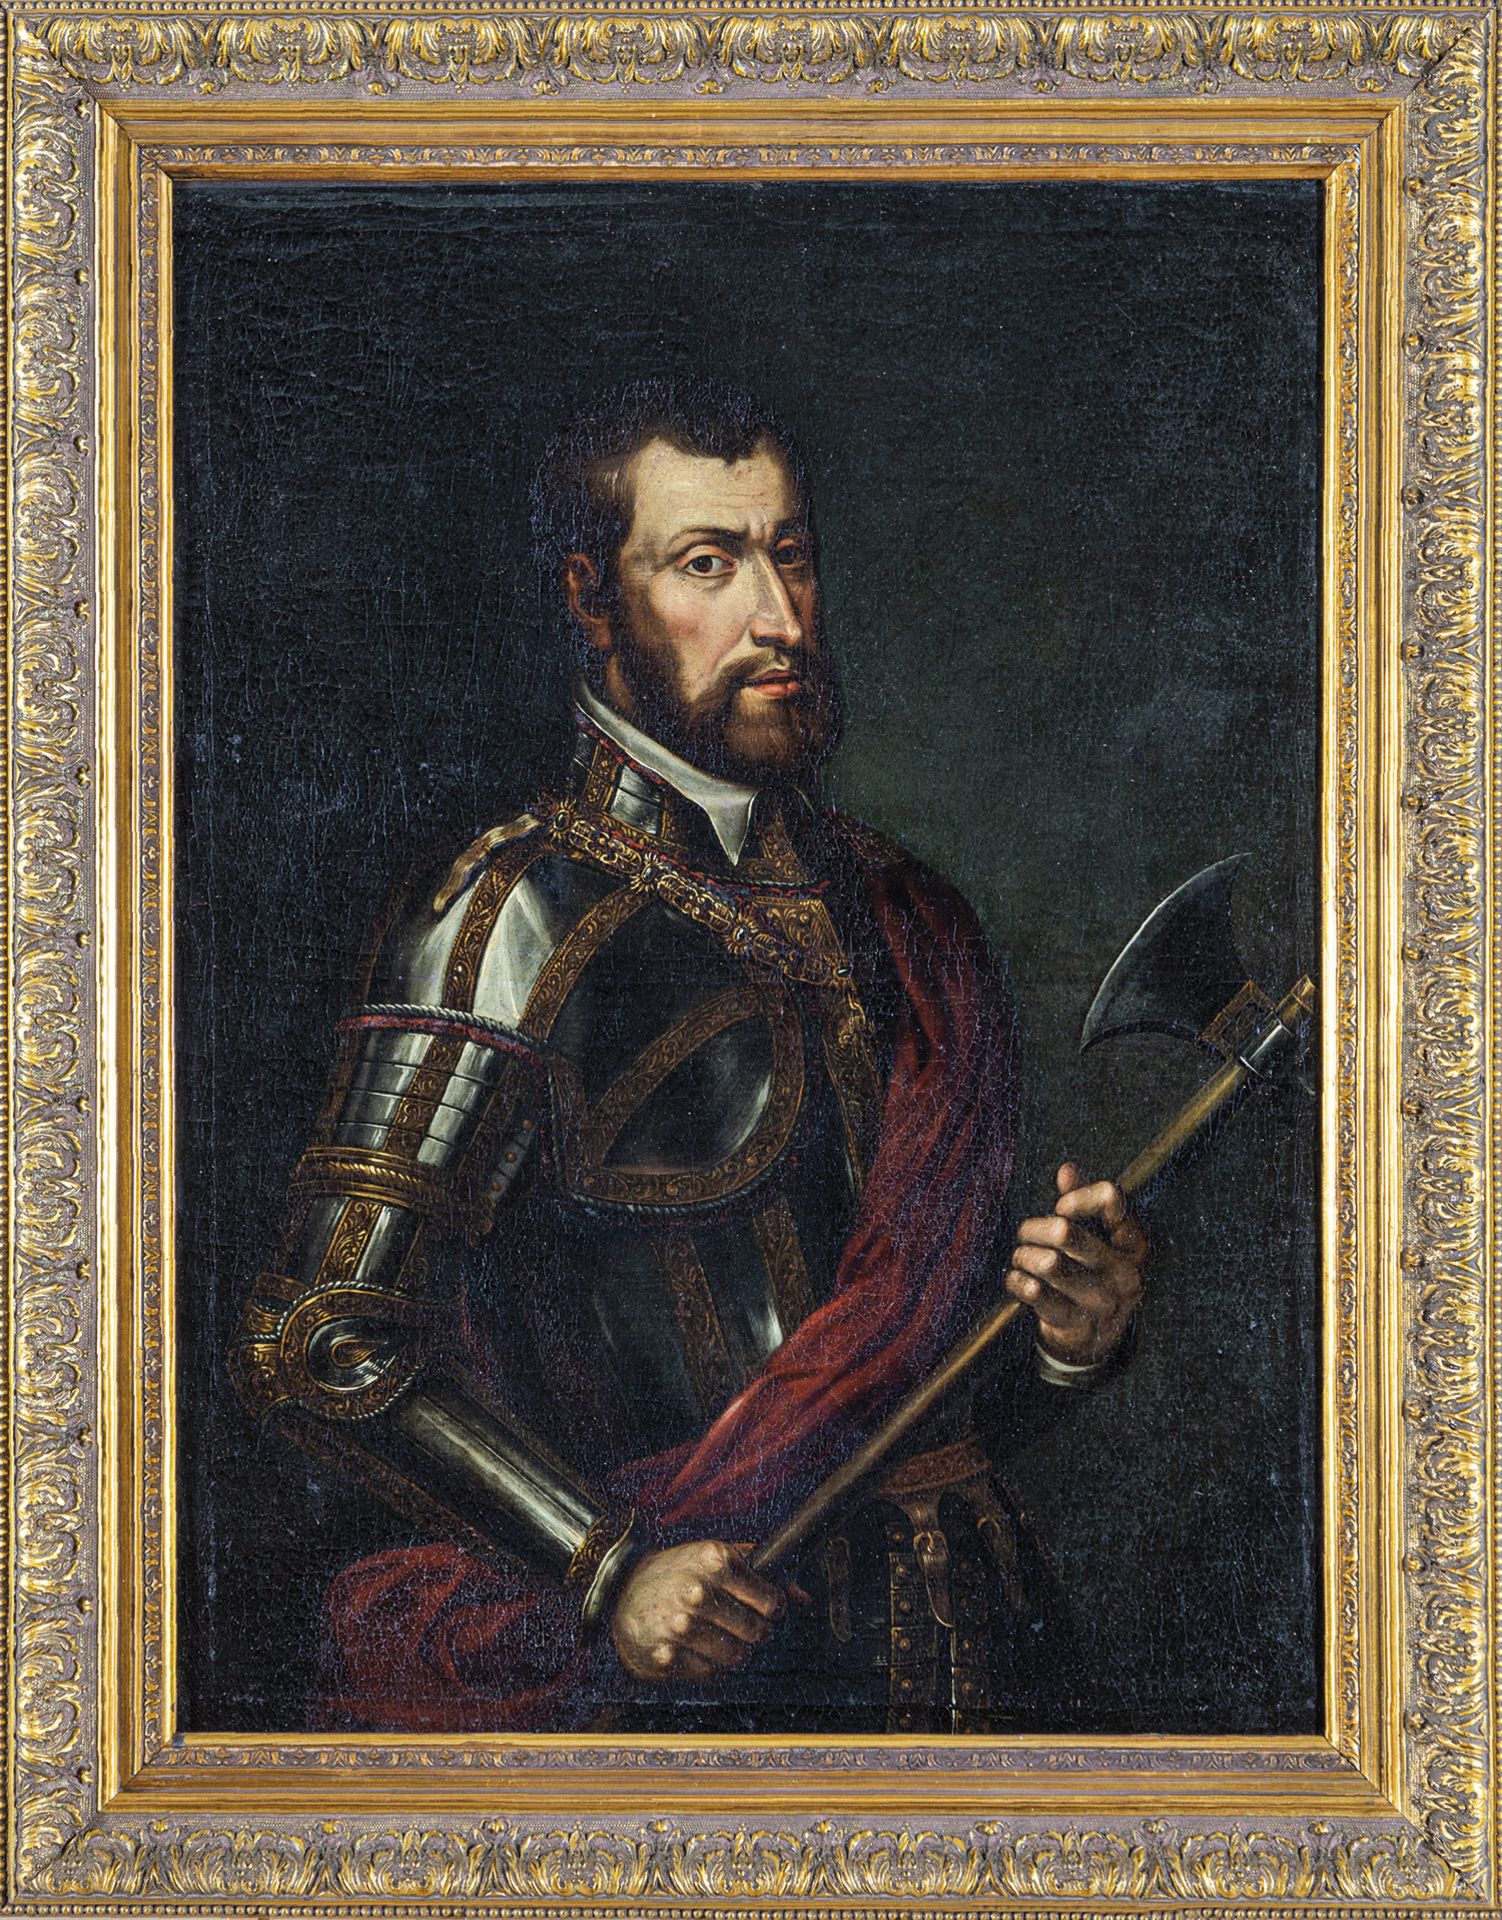 Tiziano Vecellio, alias Titian (successor)